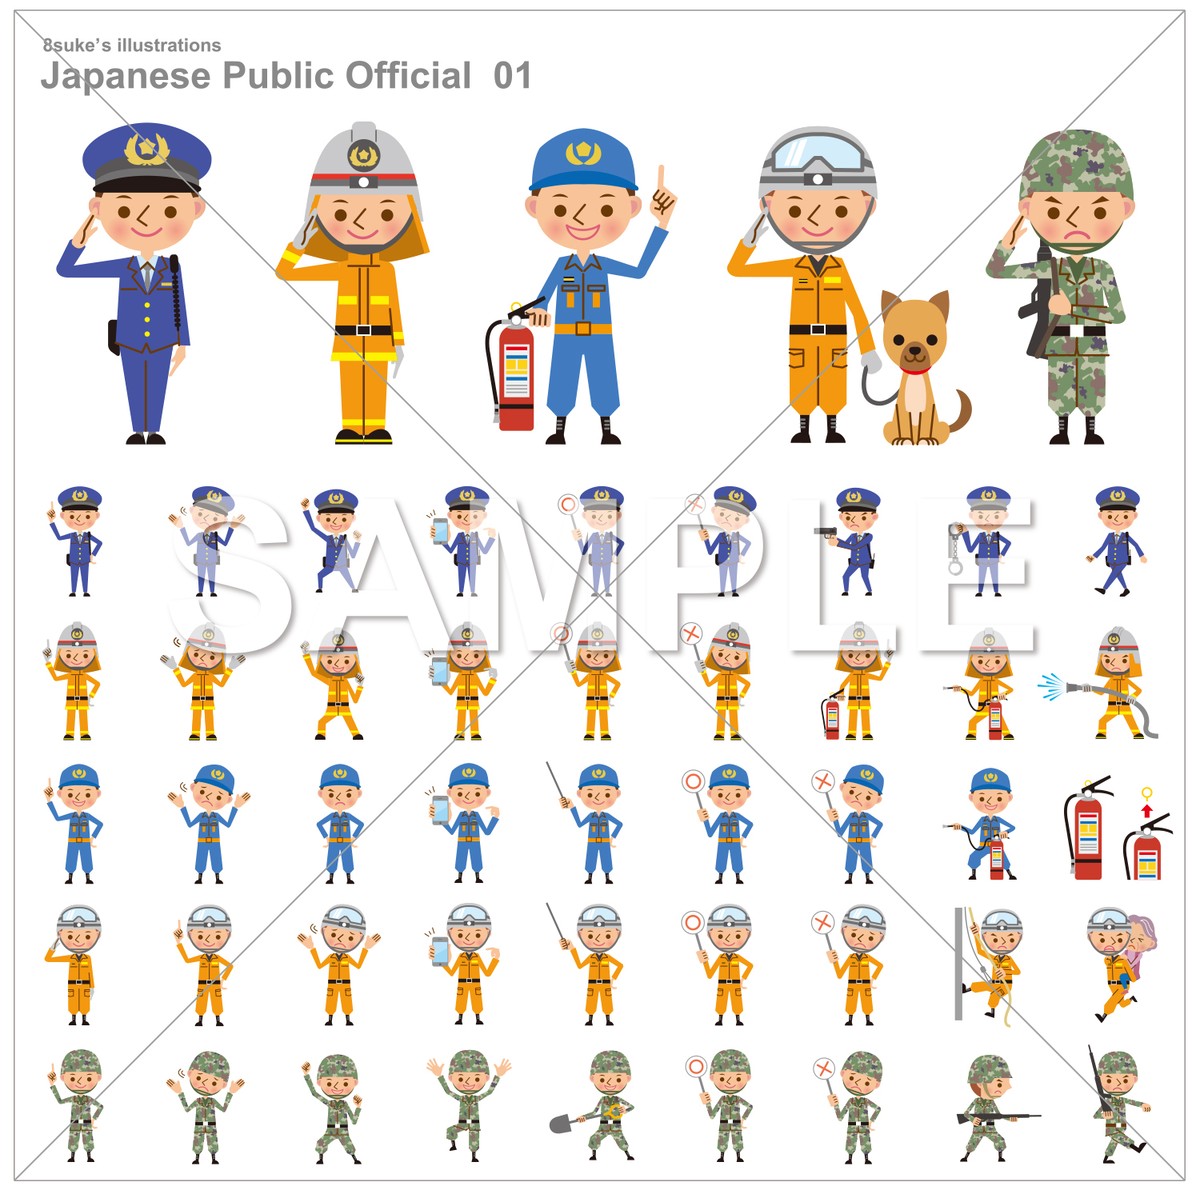 イラスト素材 警察官 消防士 自衛官のポーズセット ベクター Jpg Png ダウンロード版 8sukeの人物イラスト屋 かわいいベクター素材のダウンロード販売